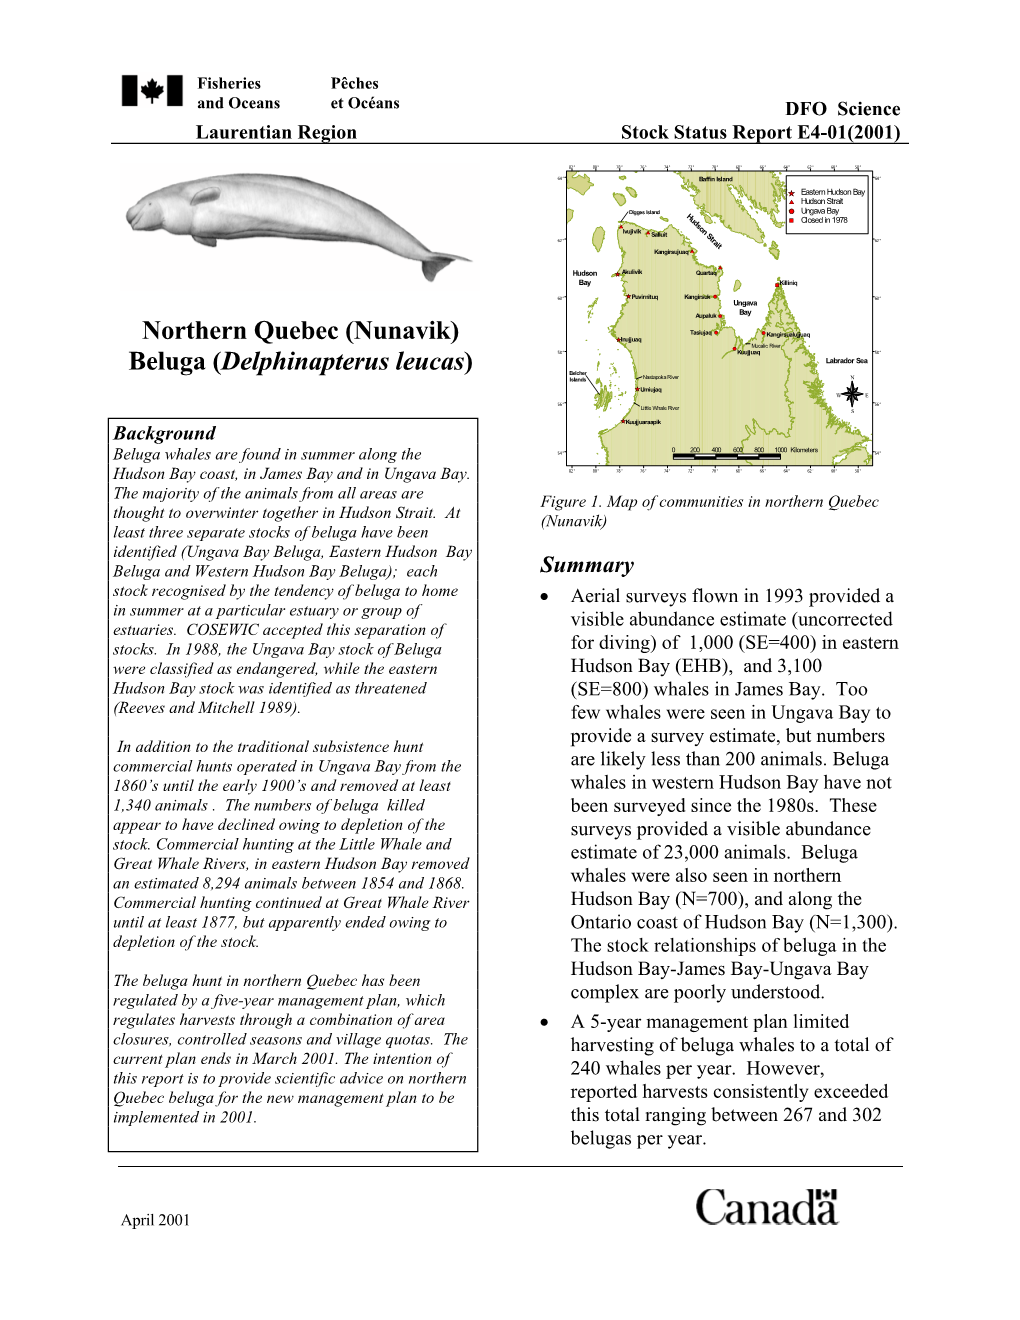 Nunavik) Beluga (Delphinapterus Leucas